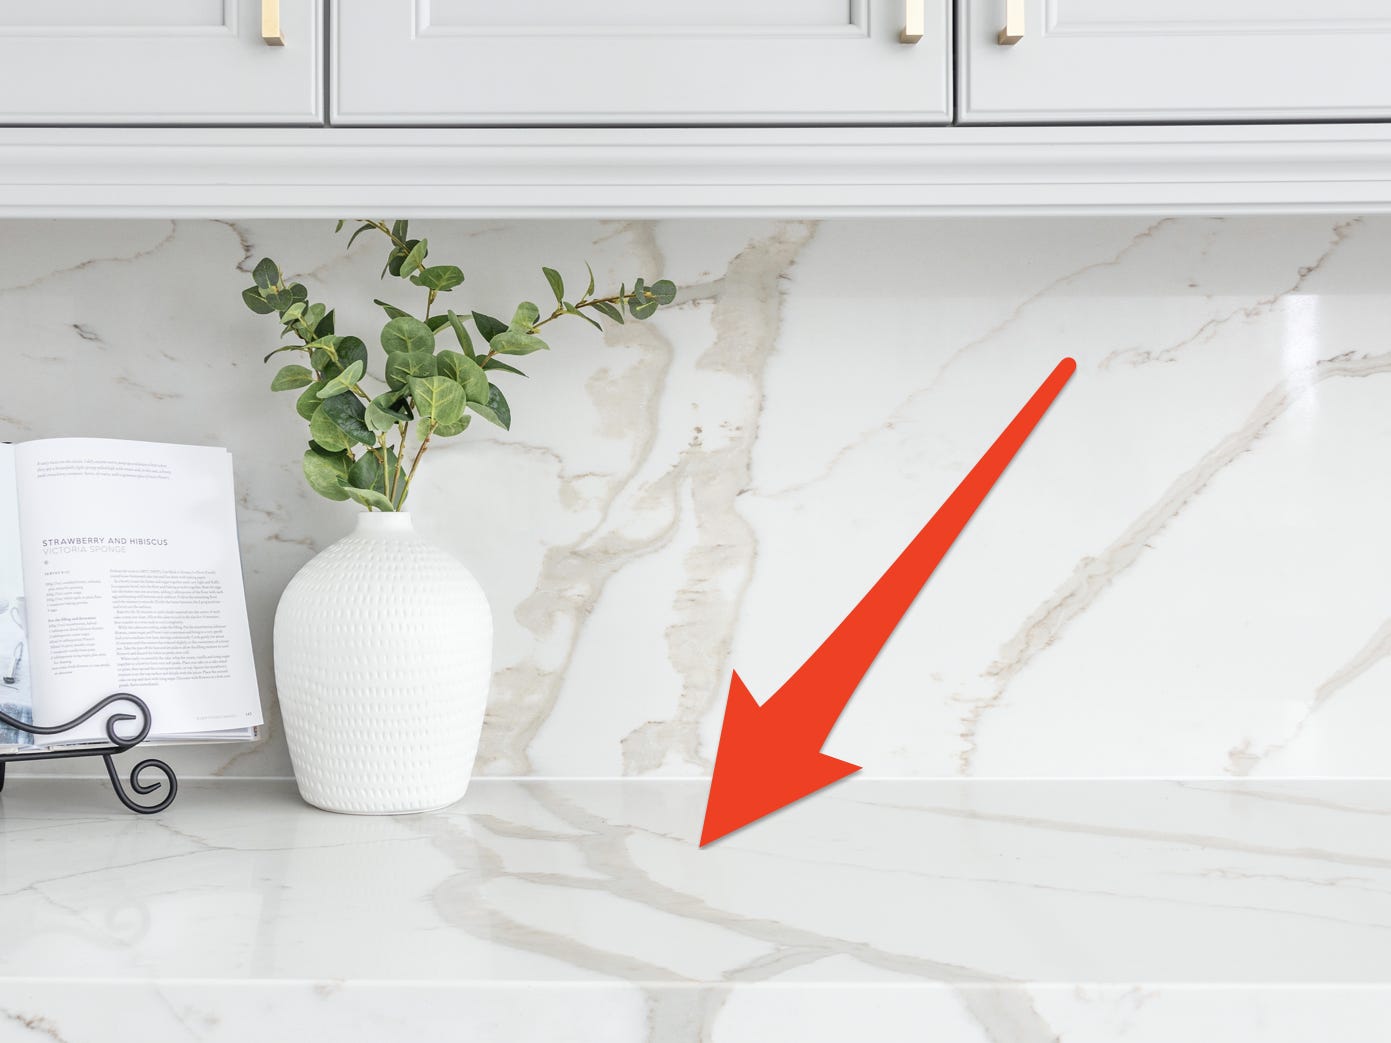 Roter Pfeil, der auf eine marmorierte Küchentheke zeigt